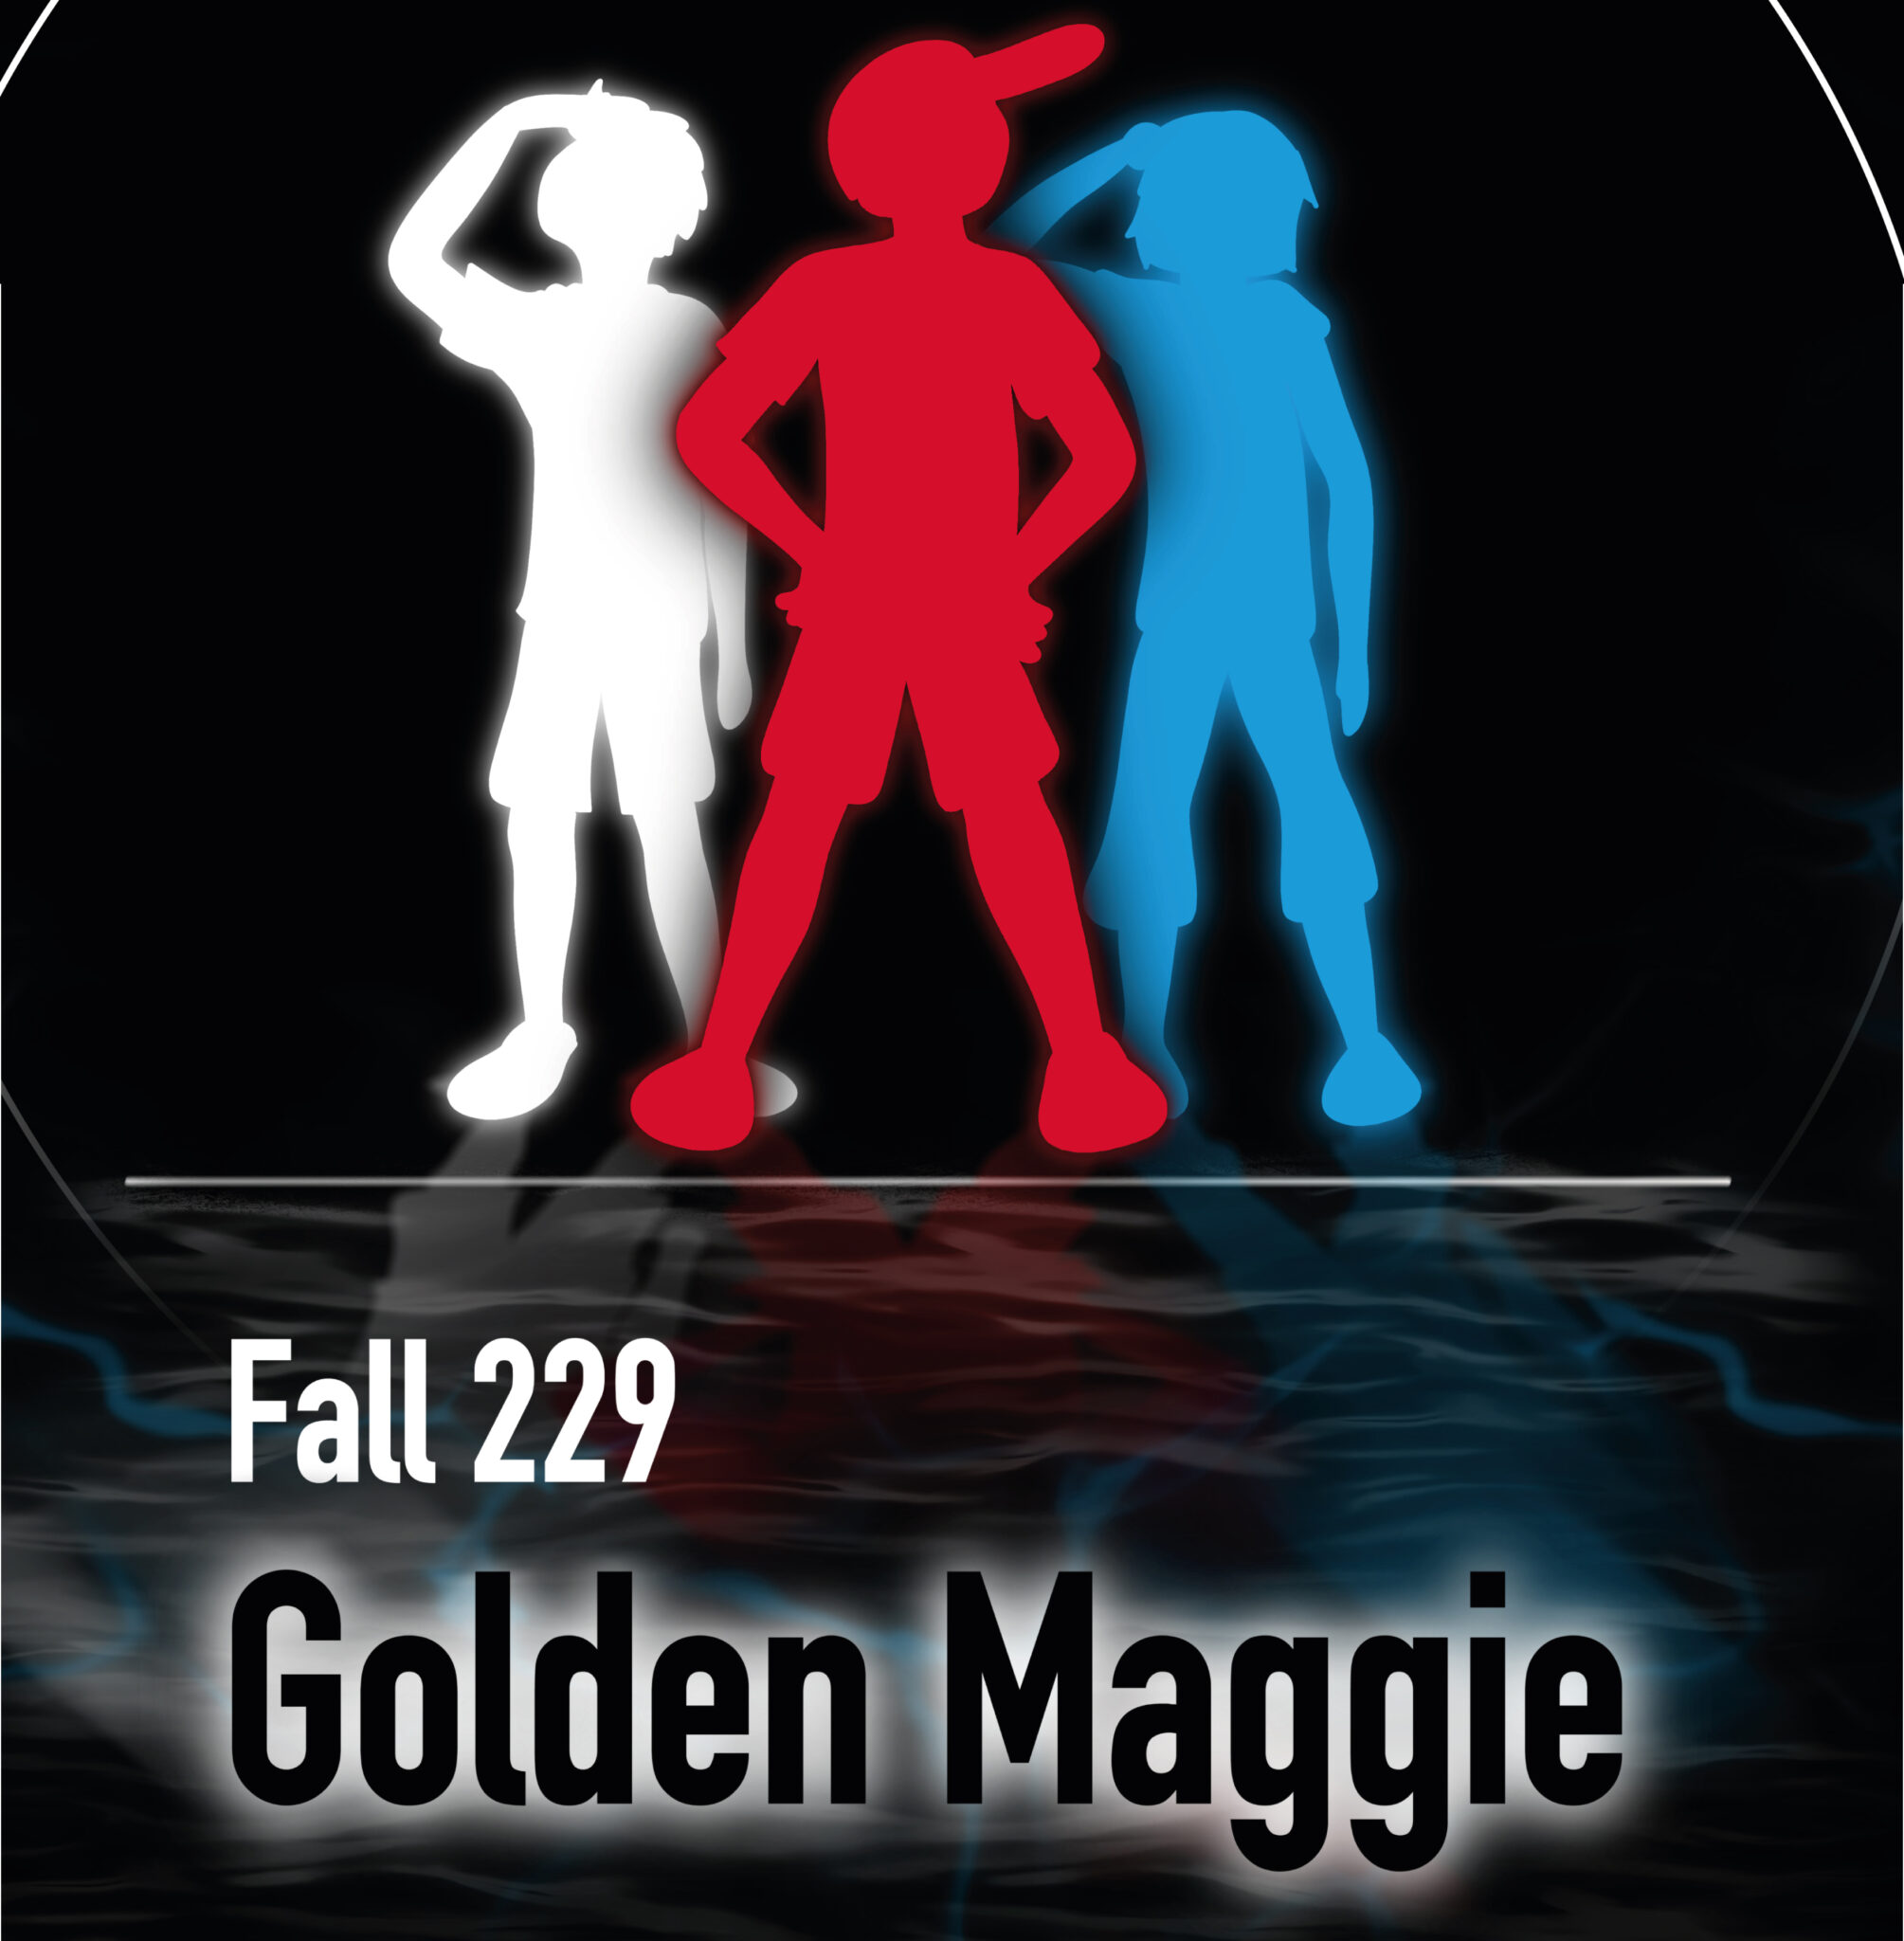 "Fall 229 - Golden Maggie"